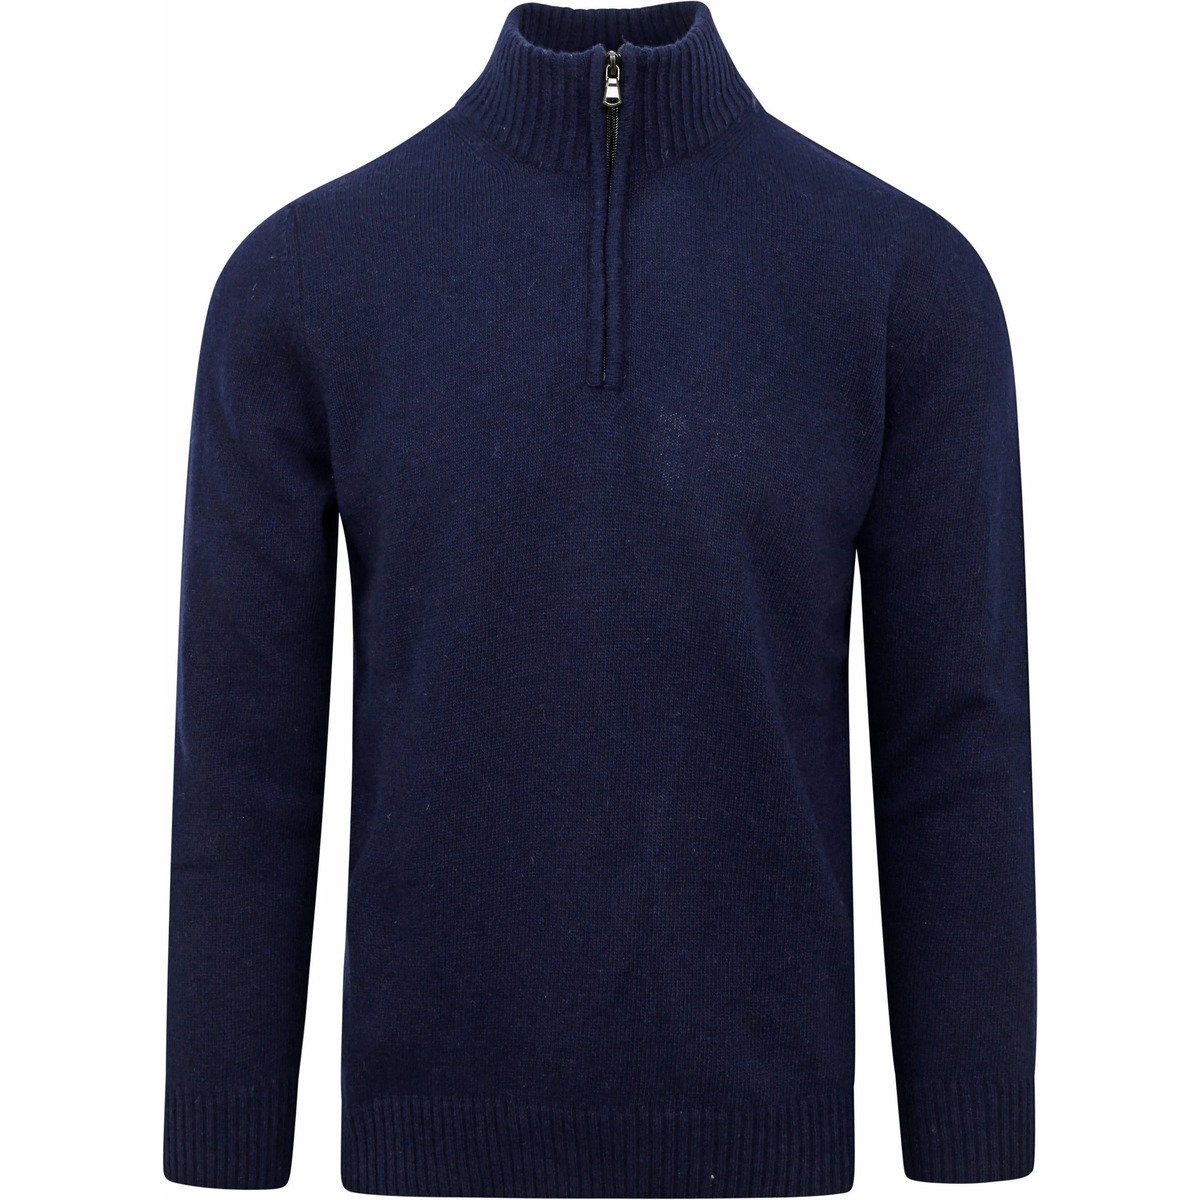 Textiel Heren Sweaters / Sweatshirts Suitable Half Zip Trui Wol Blend Navy Blauw